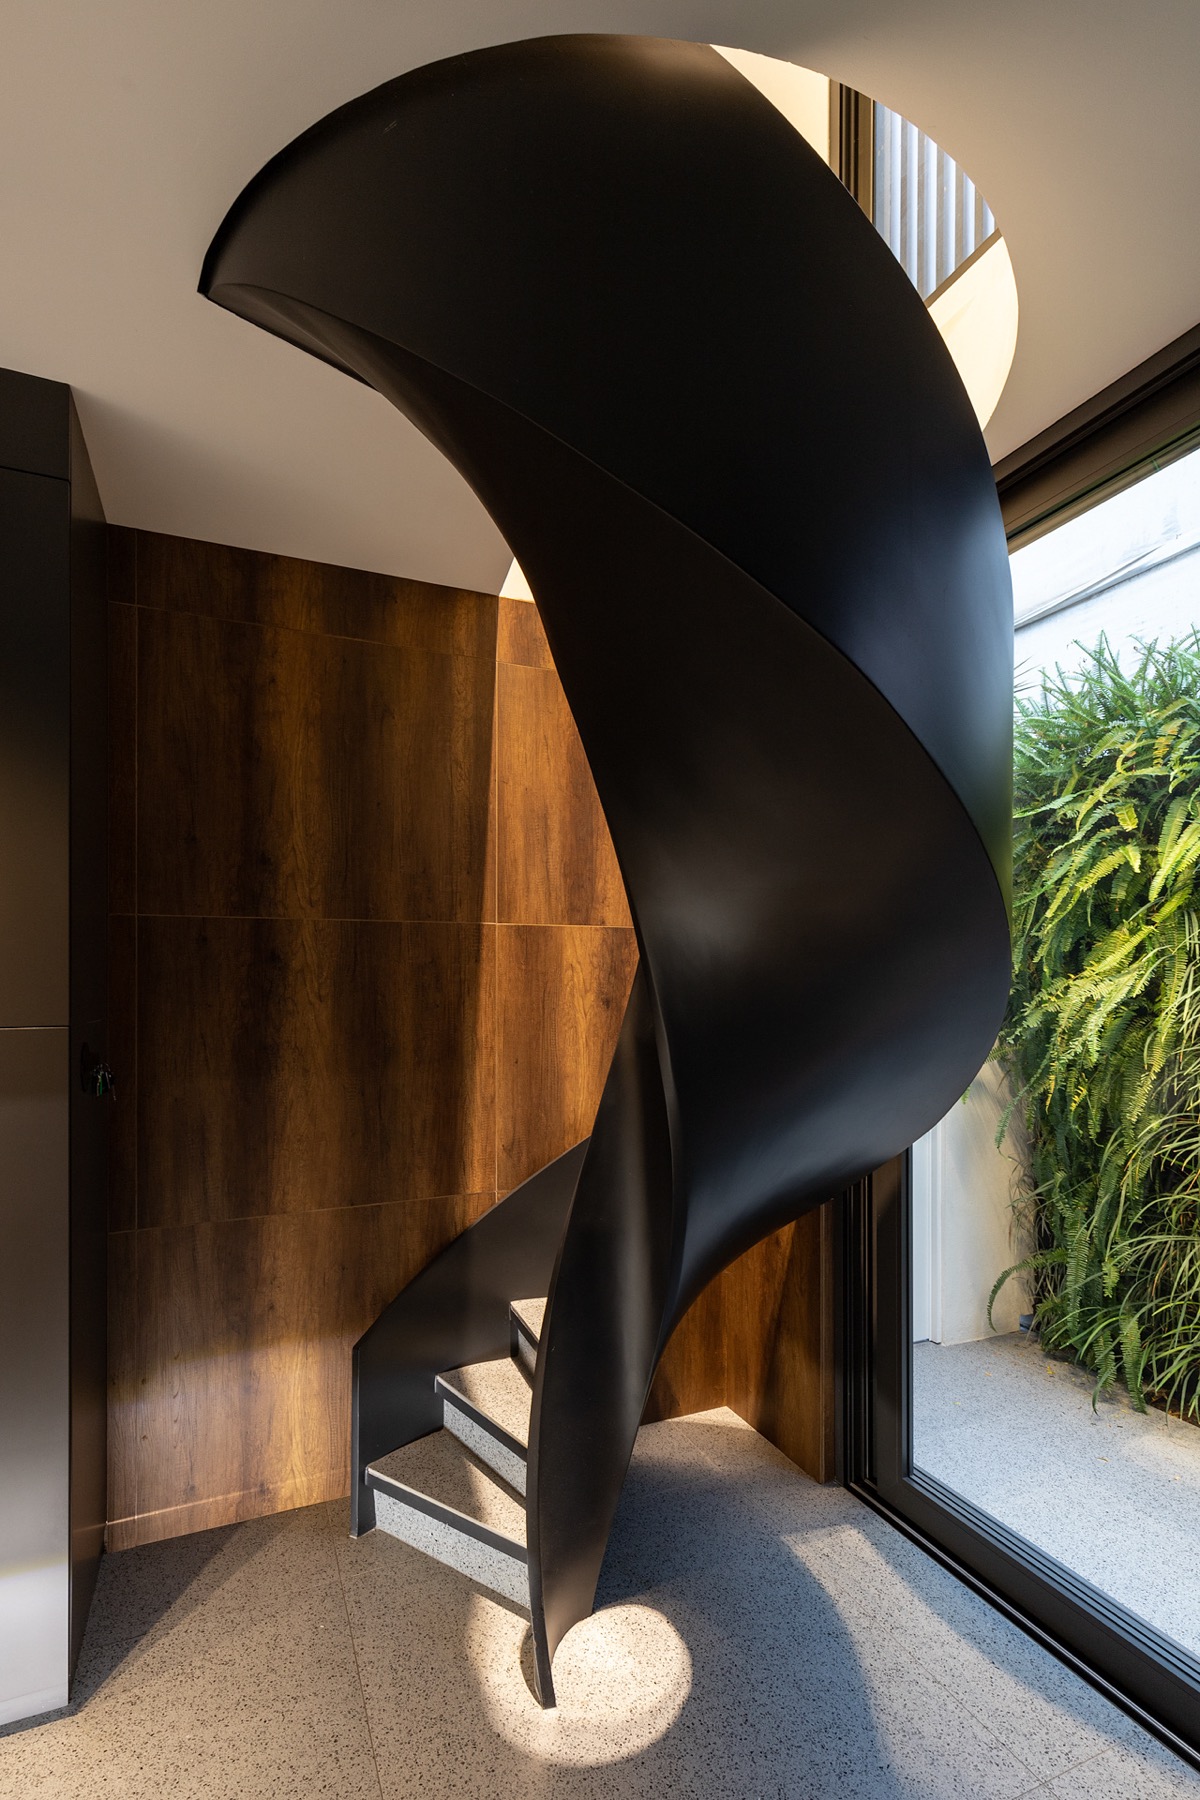 Với lớp hoàn thiện màu đen tuyền óng ả, cầu thang xoắn ốc càng thêm nổi bật.